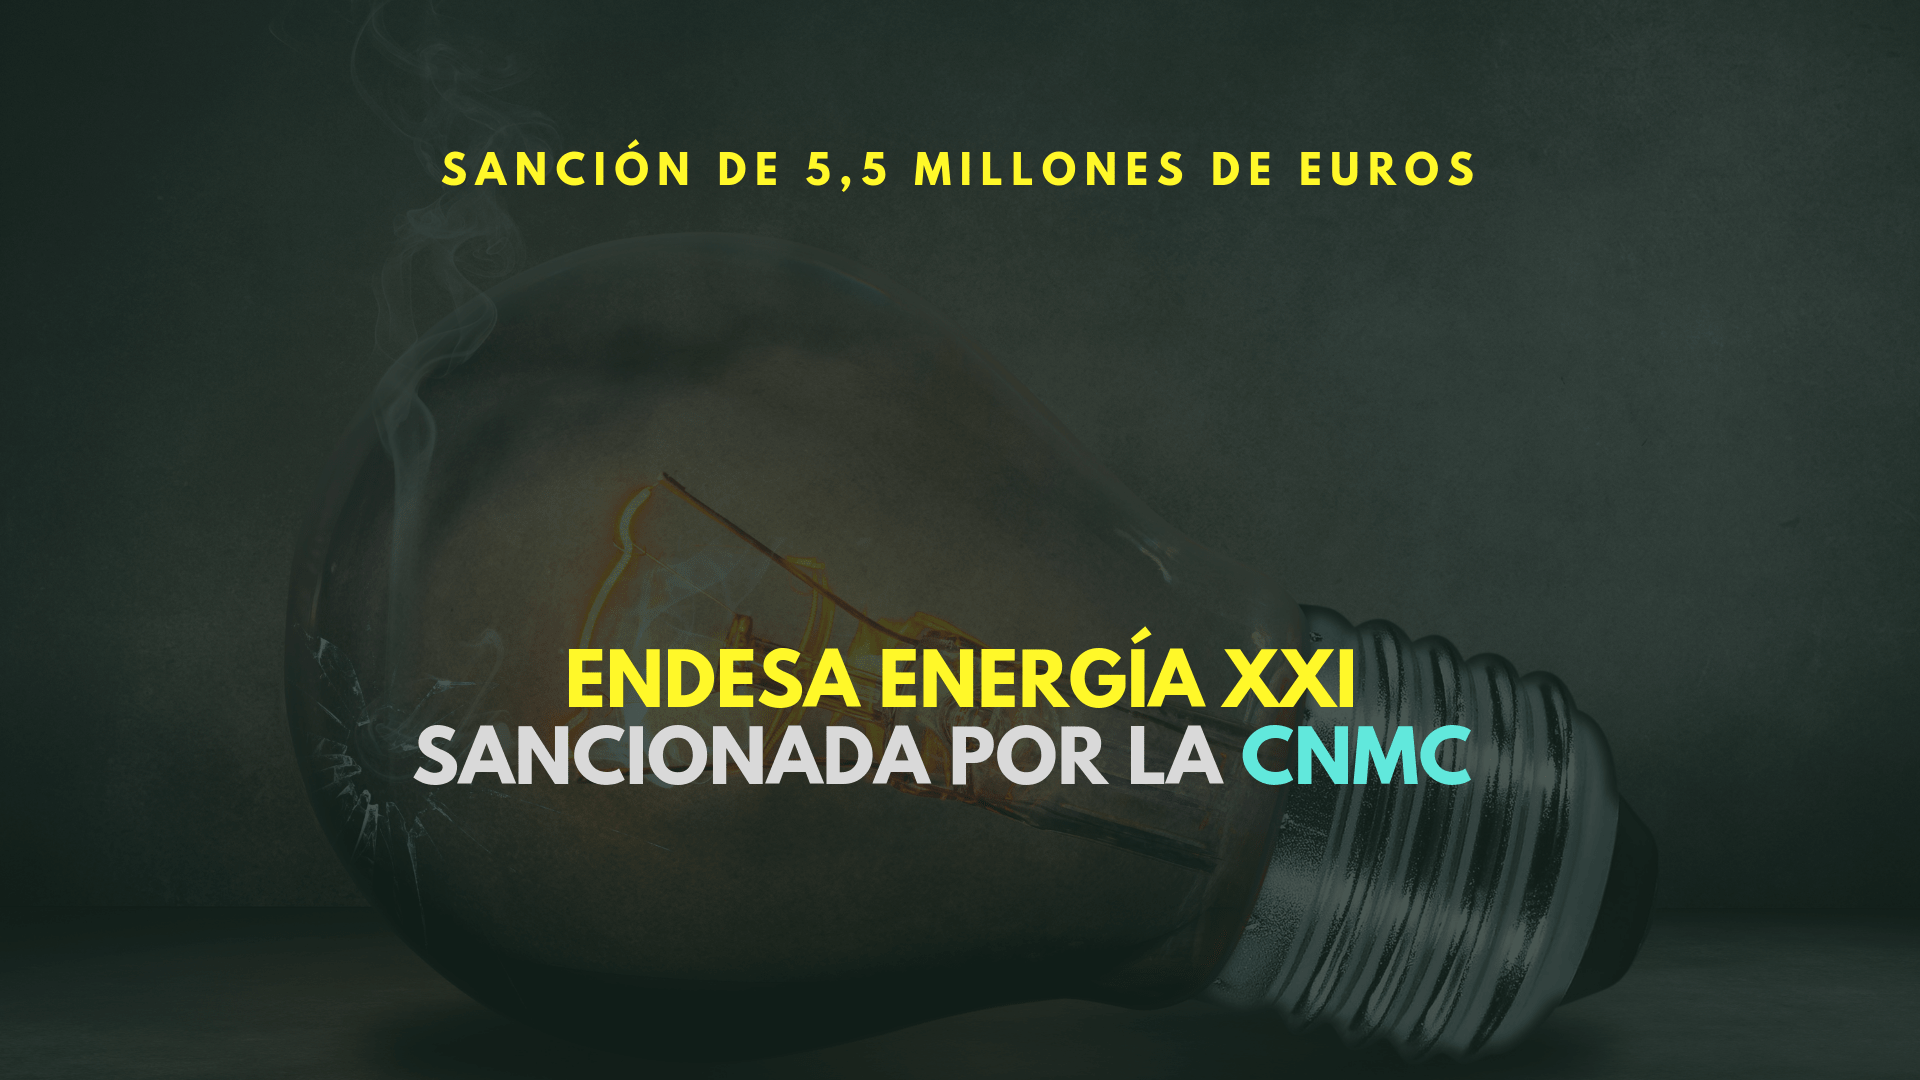 La CNMC sanciona a Endesa con 5,5 millones de euros